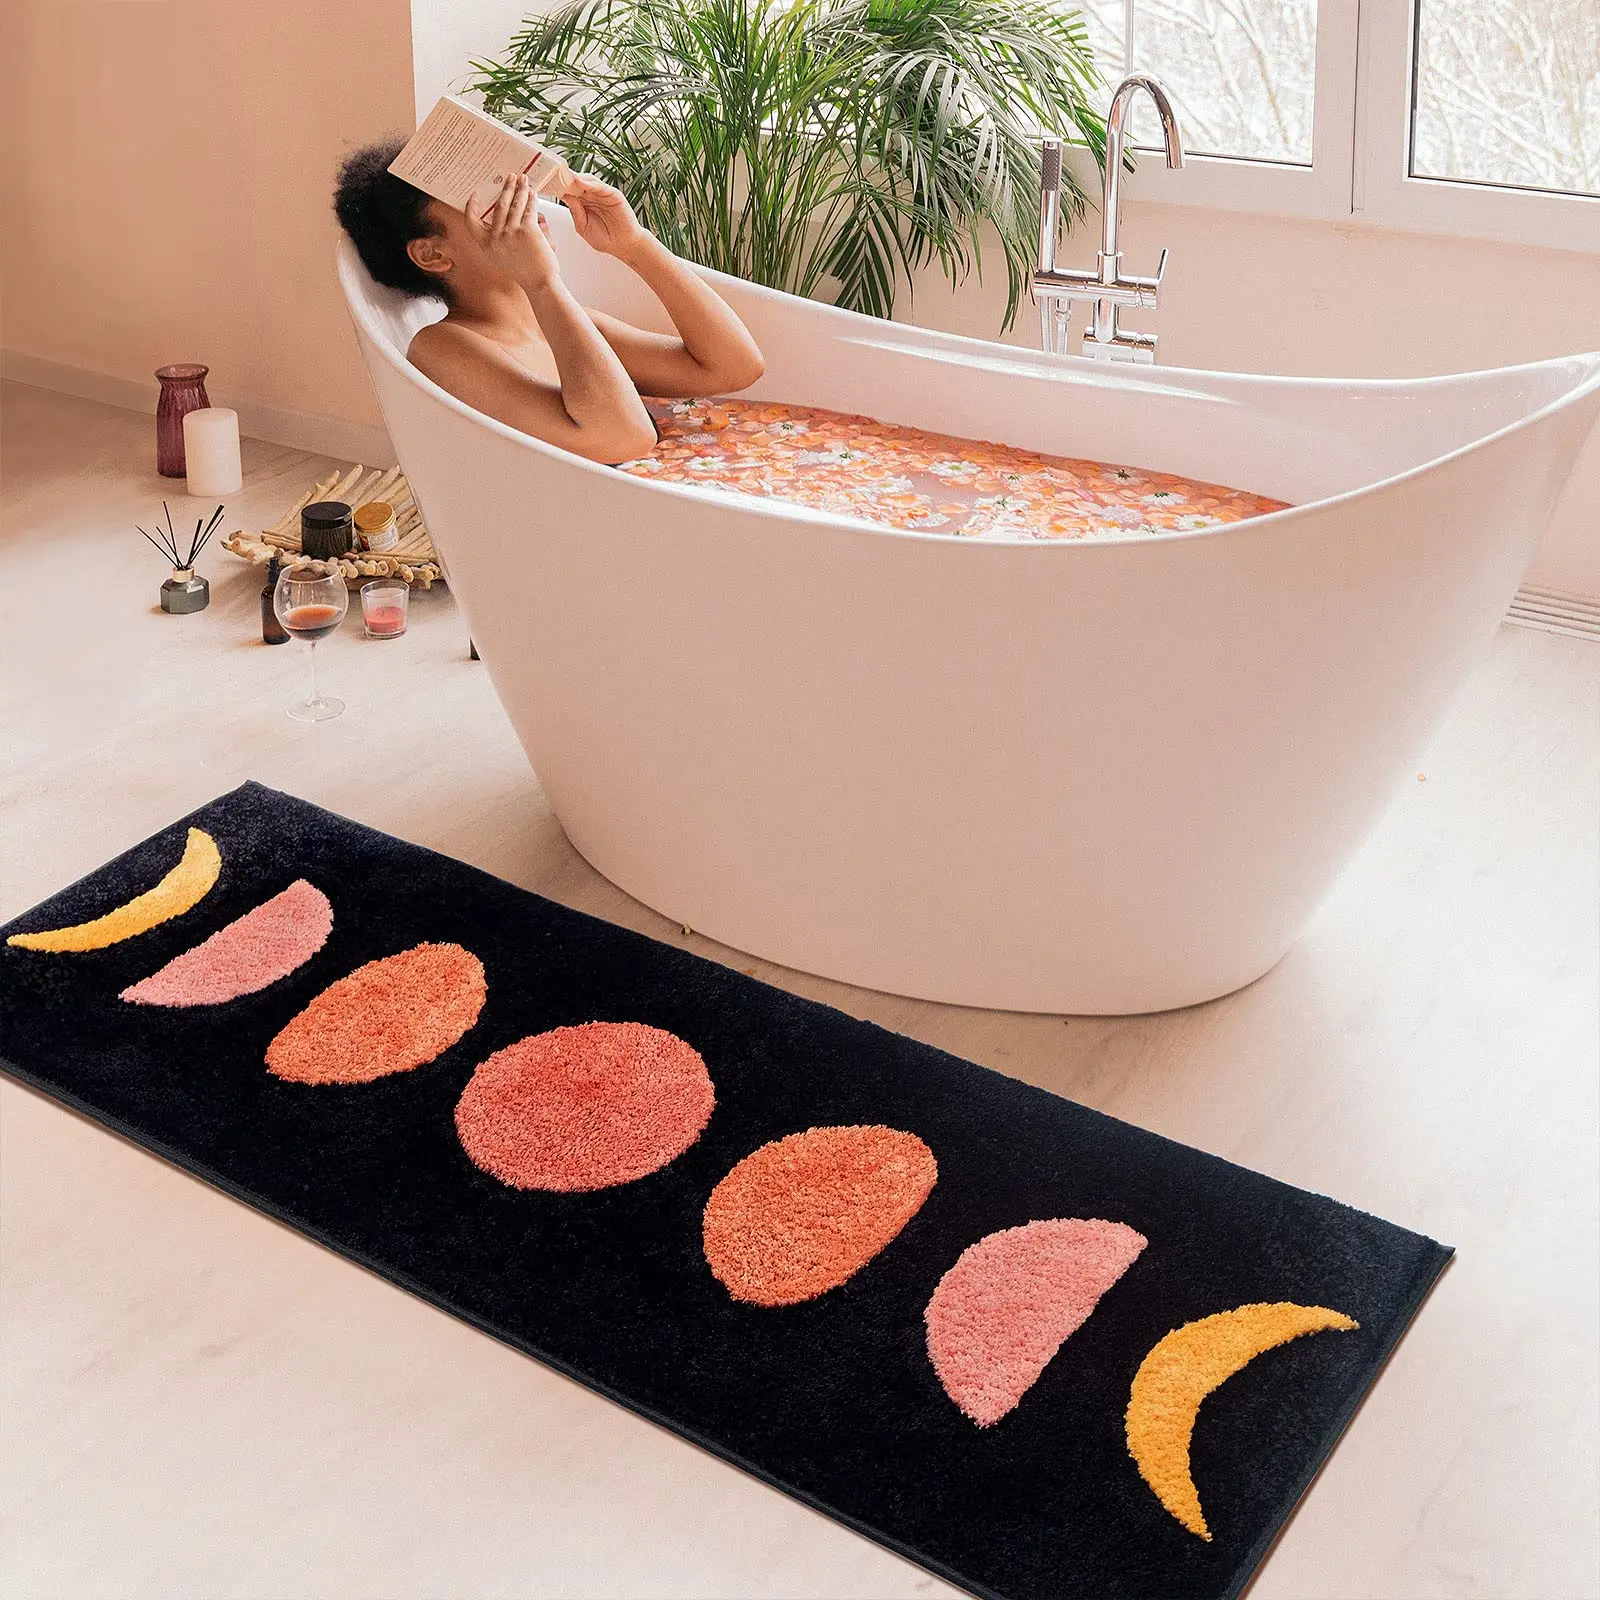  RORA Gray Bathroom Rugs Non Slip Small Bath Mat for